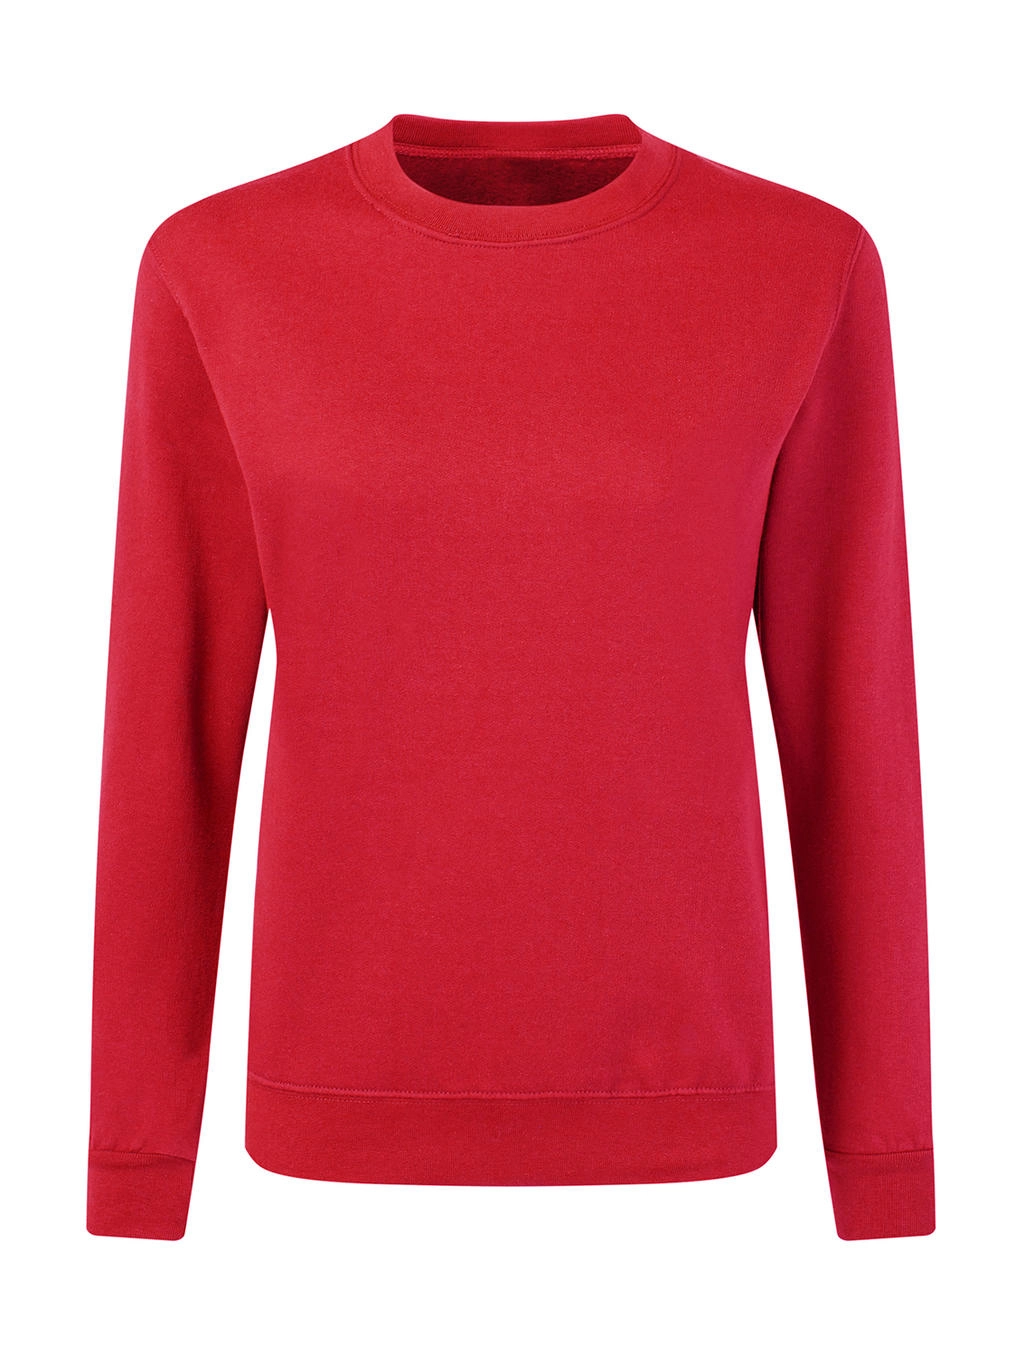 Crew Neck Sweatshirt Women zum Besticken und Bedrucken in der Farbe Red mit Ihren Logo, Schriftzug oder Motiv.